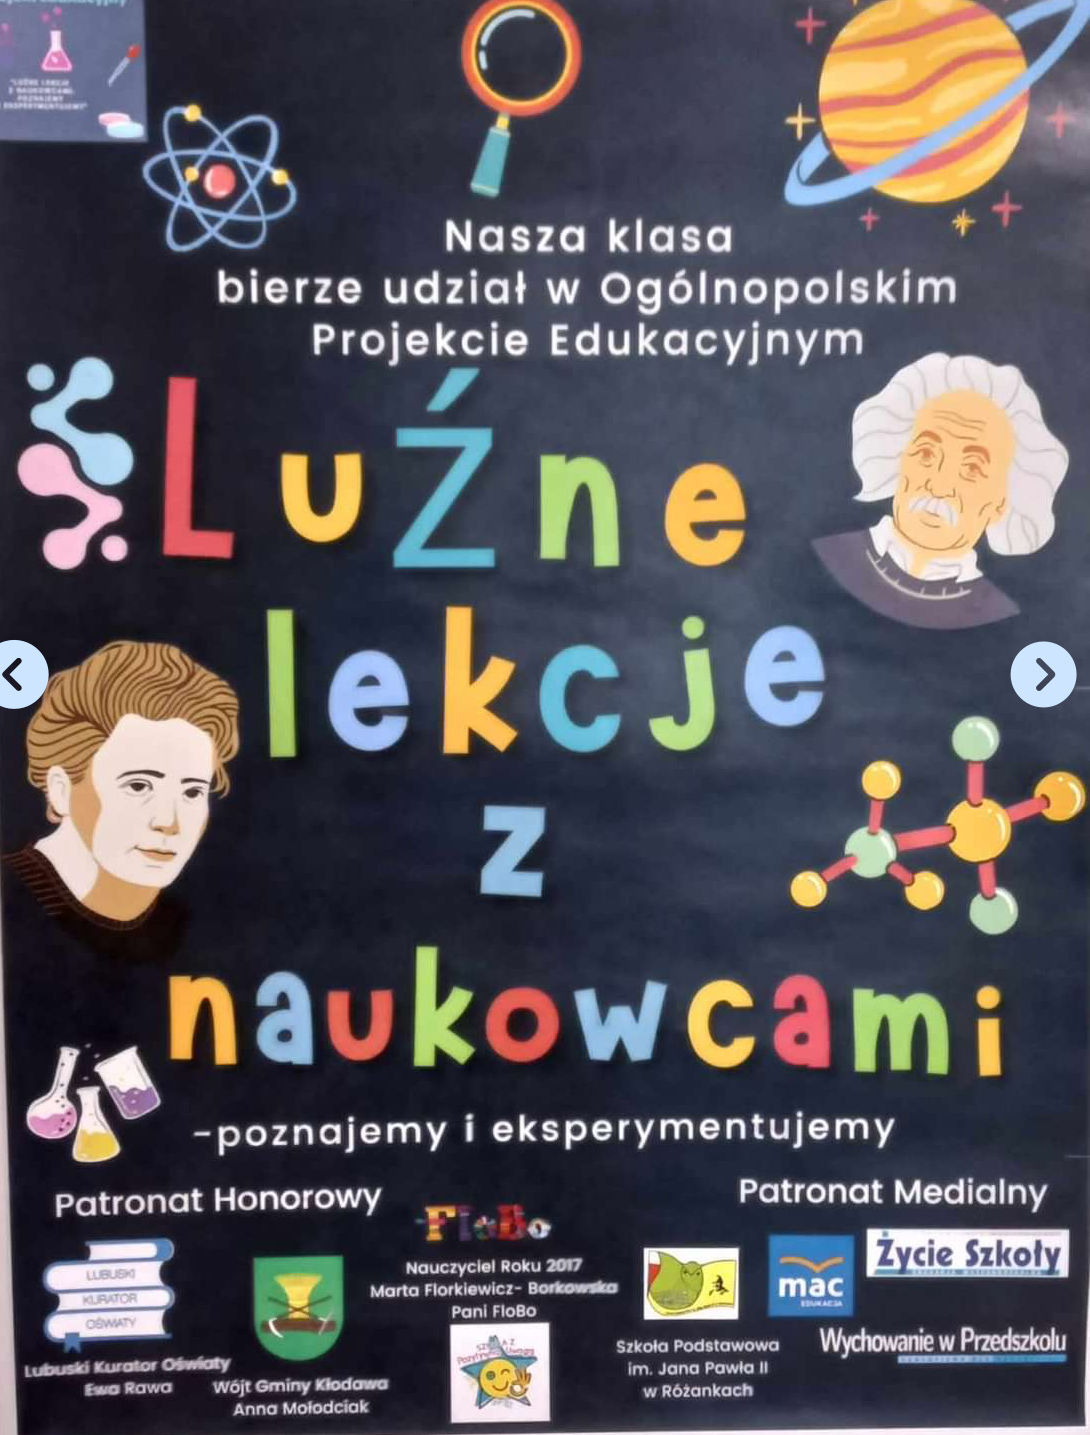 Plakat promujący program "Lużne lekcje z naukowcami".